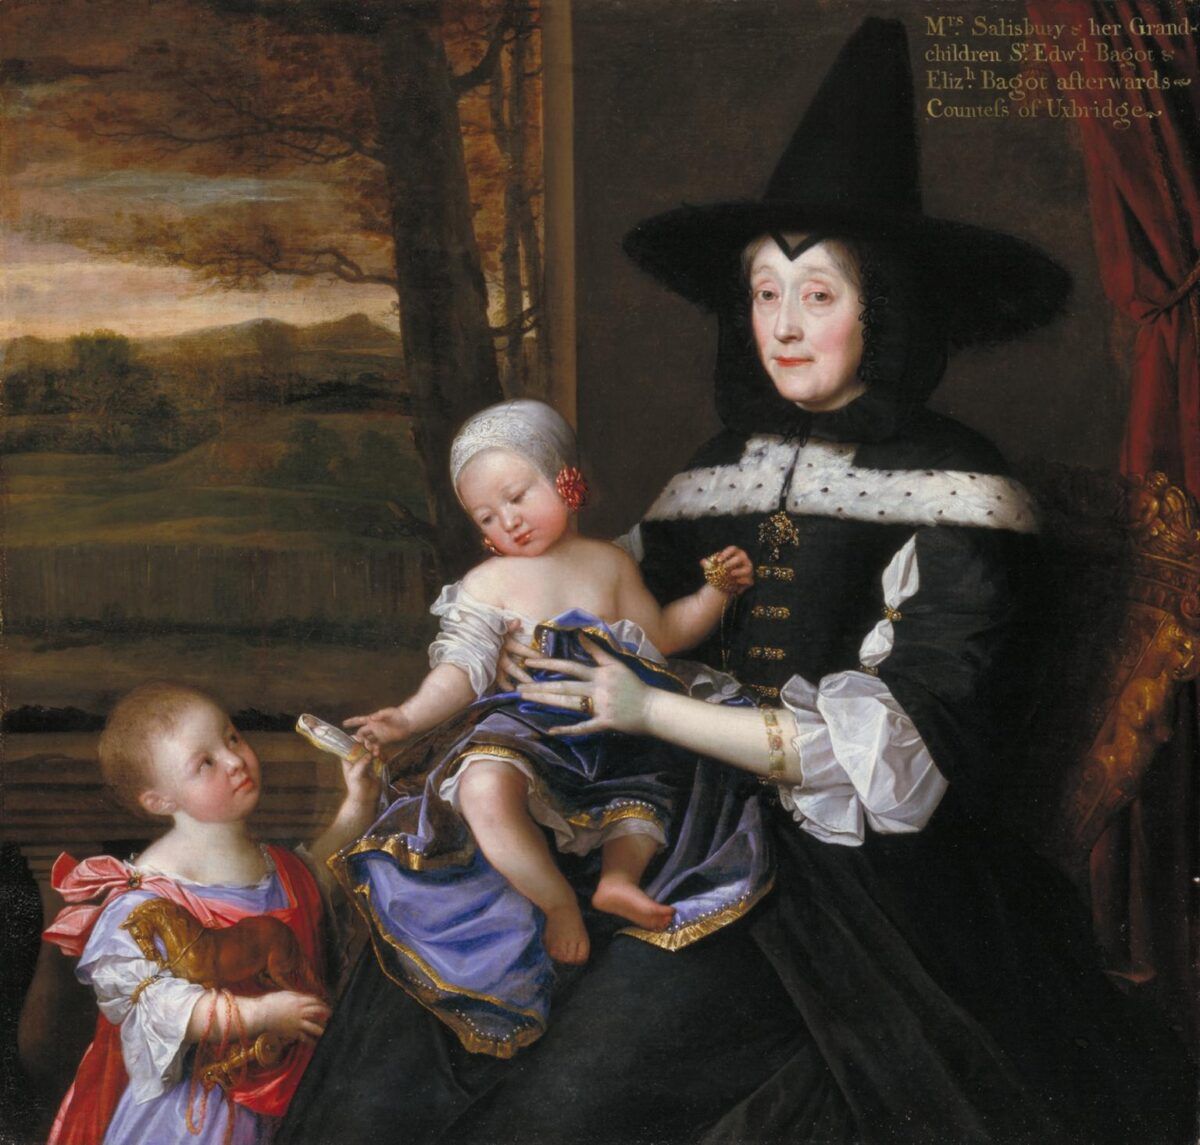 Rouva Salesburyn muotokuva lapsenlapsensa Edwardin ja Elizabeth Bagotin kanssa 1675-6 John Michael Wright 1617-1694 Esittivät Ison-Britannian taiteen suojelijat Tate Gallery -säätiön kautta 1993 http://www.tate.org.uk/art/work/T06750